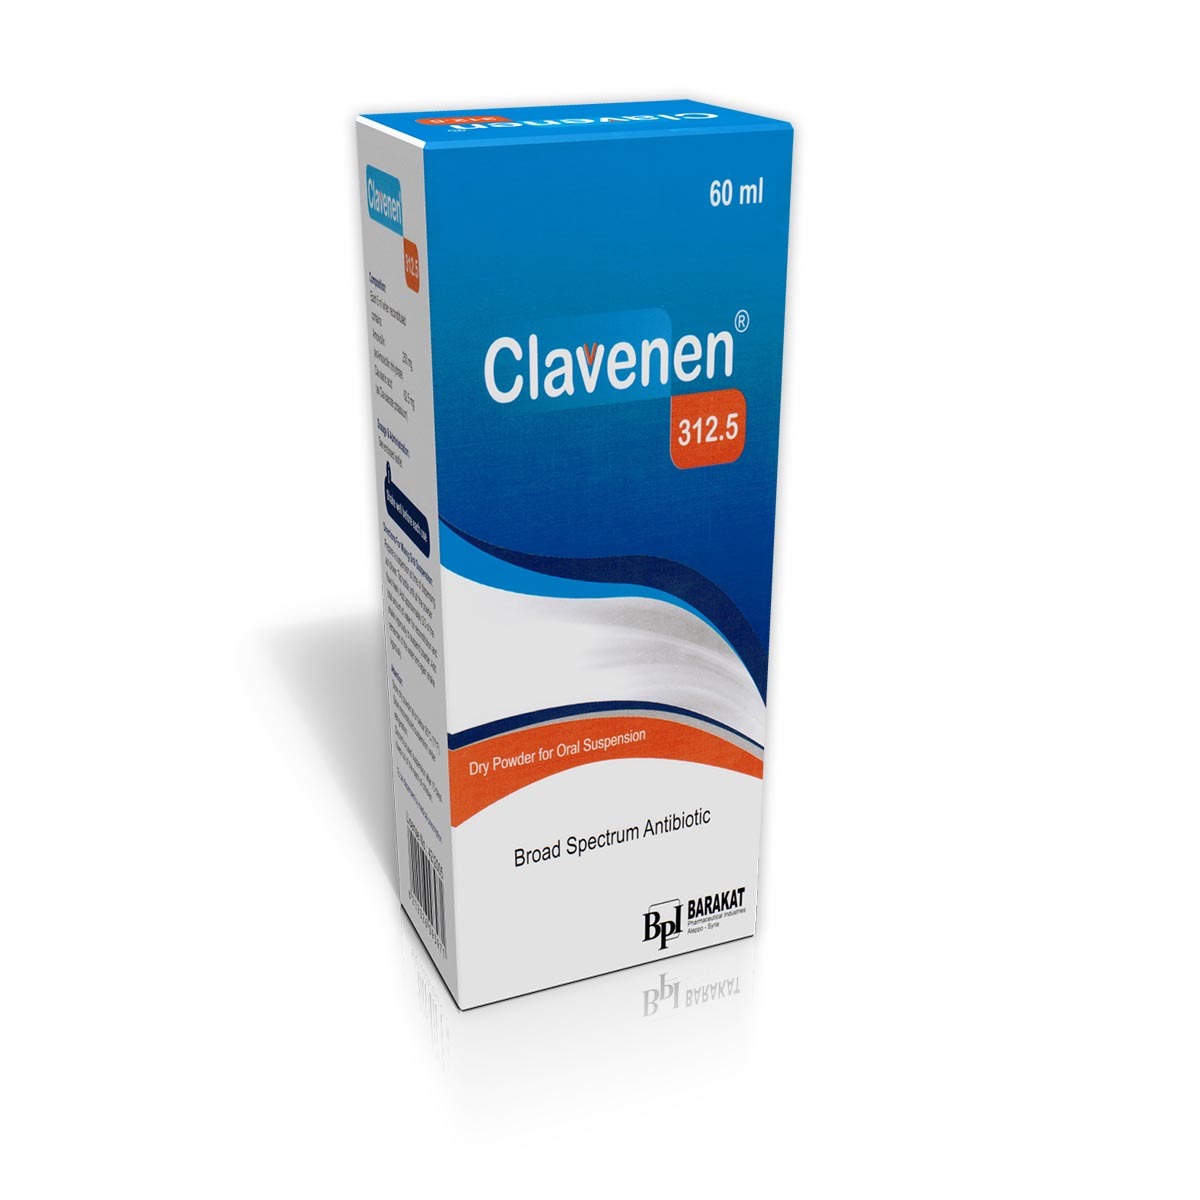 إذا كنت تبحث عن دواء يساعد في مكافحة العدوى وتخفيف الأعراض المرتبطة بها، فقد تكون قد سمعت عن دواء Clavenen 625. في هذا المقال، سنلقي نظرة على ماهية هذا الدواء وكيف يعمل للمساعدة في علاج العدوى. ما هو دواء Clavenen 625 وكيف يعمل؟ شريكك لمكافحة العدوى: يُعرف دواء Clavenen 625 باسم مضاد حيوي متكامل، حيث يحتوي على مجموعة من المكونات الفعالة التي تعمل سويًا للقضاء على البكتيريا التي تسبب العدوى. يحتوي هذا الدواء على المادة الفعالة أموكسيسيللين والأسبرجيلس المستخلص من أوراق نبات الصفصاف. كيف يعمل؟ دواء Clavenen 625 يعمل عن طريق تثبيط نشاط البكتيريا وقتلها، مما يعزز فعالية الدواء في مكافحة العدوى وتخفيف الأعراض المرتبطة بها. يقوم الأموكسيسيللين بعرقلة تصنيع جدار البكتيريا المسببة للعدوى، في حين يساعد الأسبرجيلس على زيادة تأثير الأموكسيسيللين على البكتيريا. متى يجب استخدامه؟ ينصح باستخدام دواء Clavenen 625 في حالات العدوى التي تصيب الجهاز التنفسي، والجهاز الهضمي، والبولية، والنسج والأنسجة المحيطة بالجروح. يجب استشارة الطبيب قبل تناول هذا الدواء واتباع التعليمات المحددة من قبله. في الختام، دواء Clavenen 625 هو مضاد حيوي متكامل يستخدم لمكافحة مختلف أنواع العدوى. يعمل على قتل وتثبيط نمو البكتيريا وتخفيف الأعراض المرتبطة بها. يجب استشارة الطبيب قبل استخدام هذا الدواء واتباع التعليمات المحددة لضمان استخدامه بشكل آمن وفعال. فوائد دواء Clavenen 625 إذا كنت تبحث عن دواء فعال لعلاج الالتهابات والعدوى، فإن دواء Clavenen 625 هو الخيار المثالي لك. يتميز هذا الدواء بالعديد من الفوائد التي يمكن أن تساعدك في التغلب على المشاكل الصحية التي تسببها الالتهابات والعدوى. تخفيف الالتهابات والعدوى يحتوي دواء Clavenen 625 على مادة الأموكسيسيلين وحمض الكلافولانيك، وهما مضادات حيوية فعالة تستخدم لعلاج العديد من الالتهابات والعدوى. فإذا كنت تعاني من التهاب بالجهاز التنفسي، أو التهاب بولي، أو التهاب جرح، فإن دواء Clavenen 625 يمكن أن يساعد في تخفيف الألم وتقليل الانتشار الخطير للعدوى. تعزيز الجهاز المناعي بالإضافة إلى علاج الالتهابات والعدوى، يعزز دواء Clavenen 625 جهاز المناعة لديك. فهو يحتوي على مكونات تساهم في تقوية الجهاز المناعي وتساعده على مكافحة الأمراض والعدوى بشكل أكثر فعالية. التحكم في الأمراض الجرثومية بفضل تركيبته المتكاملة والفعالة، يساعد دواء Clavenen 625 في التحكم في الأمراض الجرثومية. فإذا كان لديك عدوى بكتيرية، مثل التهاب الحلق أو التهاب حول الأسنان، فإن هذا الدواء قادر على قطع سلسلة العدوى وتخفيف الأعراض. بصفة عامة، يُعتبر دواء Clavenen 625 خيارًا فعالًا للتغلب على الالتهابات والعدوى المختلفة. إذا كنت تعاني من أي من هذه المشاكل الصحية، فلا تتردد في استشارة الطبيب قبل استخدام هذا الدواء. استخدامات دواء Clavenen 625 هل تعاني من التهابات الجهاز التنفسي العلوي، التهابات الجهاز البولي، أو التهابات الجلد والأنسجة الرخوة؟ إذاً، دواء Clavenen 625 قد يكون لديه الإجابة المناسبة لك. علاج التهابات الجهاز التنفسي العلوي دواء Clavenen 625 يحتوي على المادة الفعالة أموكسيسيلين والأسيد الكلافولانيك، وهما مضادات حيوية تستخدم لعلاج التهابات الجهاز التنفسي العلوي مثل التهاب الحلق، التهاب اللوزتين، والتهابات الأذن. يعمل هذا الدواء على قتل البكتيريا المقاومة للأموكسيلين ومنع نموها. علاج التهابات الجهاز البولي كما يُستخدم دواء Clavenen 625 في علاج التهابات الجهاز البولي مثل التهاب المثانة والتهاب الكلى. يعمل الدواء على التصدي للبكتيريا المسببة للالتهاب ويساعد على التخلص من الأعراض المرتبطة بهذه الحالات. علاج التهابات الجلد والأنسجة الرخوة Clavenen 625 أيضًا يستخدم لعلاج التهابات الجلد والأنسجة الرخوة مثل تلك التي تنتج عن الجروح أو الحروق. يساهم الدواء في منع انتشار العدوى وتسريع عملية الشفاء. من المهم أن تستخدم دواء Clavenen 625 بناءً على وصفة الطبيب، وأن تتبع جرعاته بدقة. إذا كان لديك أي أعراض جانبية أو استفسارات، يُفضل مراجعة الطبيب لتقديم المشورة المناسبة. حافظ على صحتك واستمتع بالحياة برفقة دواء Clavenen 625. طريقة استخدام دواء Clavenen 625 هل تعاني من عدوى بكتيرية وتبحث عن طريقة فعالة للتخلص منها؟ أحد الخيارات الشائعة هو استخدام دواء Clavenen 625. يحتوي هذا الدواء على مادتين فعالتين هما الأموكسيسيلين وحمض الكلافولانيك، وهما يعملان بالتعاون لقتل البكتيريا ومنع نموها. الجرعة الموصى بها تعتمد الجرعة الموصى بها من Clavenen 625 على نوع وشدة العدوى. يجب أن يصف الطبيب الجرعة المثلى لك حسب حالتك. عادةً ما يُوصف الدواء بجرعة 625 ملغ، وعادةً ما تؤخذ كل 8 ساعات على مدار 7 إلى 10 أيام. مدة العلاج مدة العلاج بـ Clavenen 625 تختلف حسب نوع العدوى وشدتها. للتأكد من القضاء على العدوى بشكل كامل وتجنب عودتها، يجب الانتهاء من جميع جرعات الدواء كما هو موصى به من قبل الطبيب. التحذيرات والاحتياطات يلزم استشارة الطبيب قبل استخدام دواء Clavenen 625. يجب أن تُخبر الطبيب عن أي حساسية سابقة تجاه المضادات الحيوية أو أي مشاكل صحية أخرى لديك. قد يحدث بعض الآثار الجانبية مع استخدام هذا الدواء، ومن المهم إبلاغ الطبيب إذا ظهرت أية أعراض غير طبيعية. كما يجب اتباع تعليمات الطبيب بدقة وعدم تجاوز الجرعة المحددة. آثار جانبية لدواء Clavenen 625 يُستخدم دواء Clavenen 625 في علاج العدوى البكتيرية الحادة والمزمنة في مختلف أجزاء الجسم. وعلى الرغم من فعاليته في مكافحة العدوى، إلا أنه قد يسبب بعض الآثار الجانبية. لذا، قبل تناول هذا الدواء، من المهم أن تكون على دراية بتلك الآثار وتستشير طبيبك إذا كنت تلاحظ أي منها. الآثار الجانبية الشائعة قد تشعر بالغثيان أو تعاني من اضطرابات في المعدة مثل الإسهال أو آلام في المعدة. قد يصاب بعض الأشخاص بصداع مؤقت أو دوار. قد يصاب بعض المرضى بحكة أو طفح جلدي. الآثار الجانبية النادرة قد تلاحظ بعض التغيرات في نسبة بعض صفائح الدم مثل انخفاض عدد الصفائح الحمراء أو البيضاء في بعض الحالات. قد تشعر بحساسية تجاه الدواء، ما قد يتسبب في طفح جلدي شديد أو صعوبة في التنفس. من المهم أن تستشير طبيبك إذا كنت تلاحظ أي من هذه الآثار الجانبية وأن لا تتوقف عن تناول الدواء دون استشارة الطبيب أولاً. يتمتع الطبيب بالخبرة والمعرفة لتقييم حالتك واتخاذ القرار الملائم.